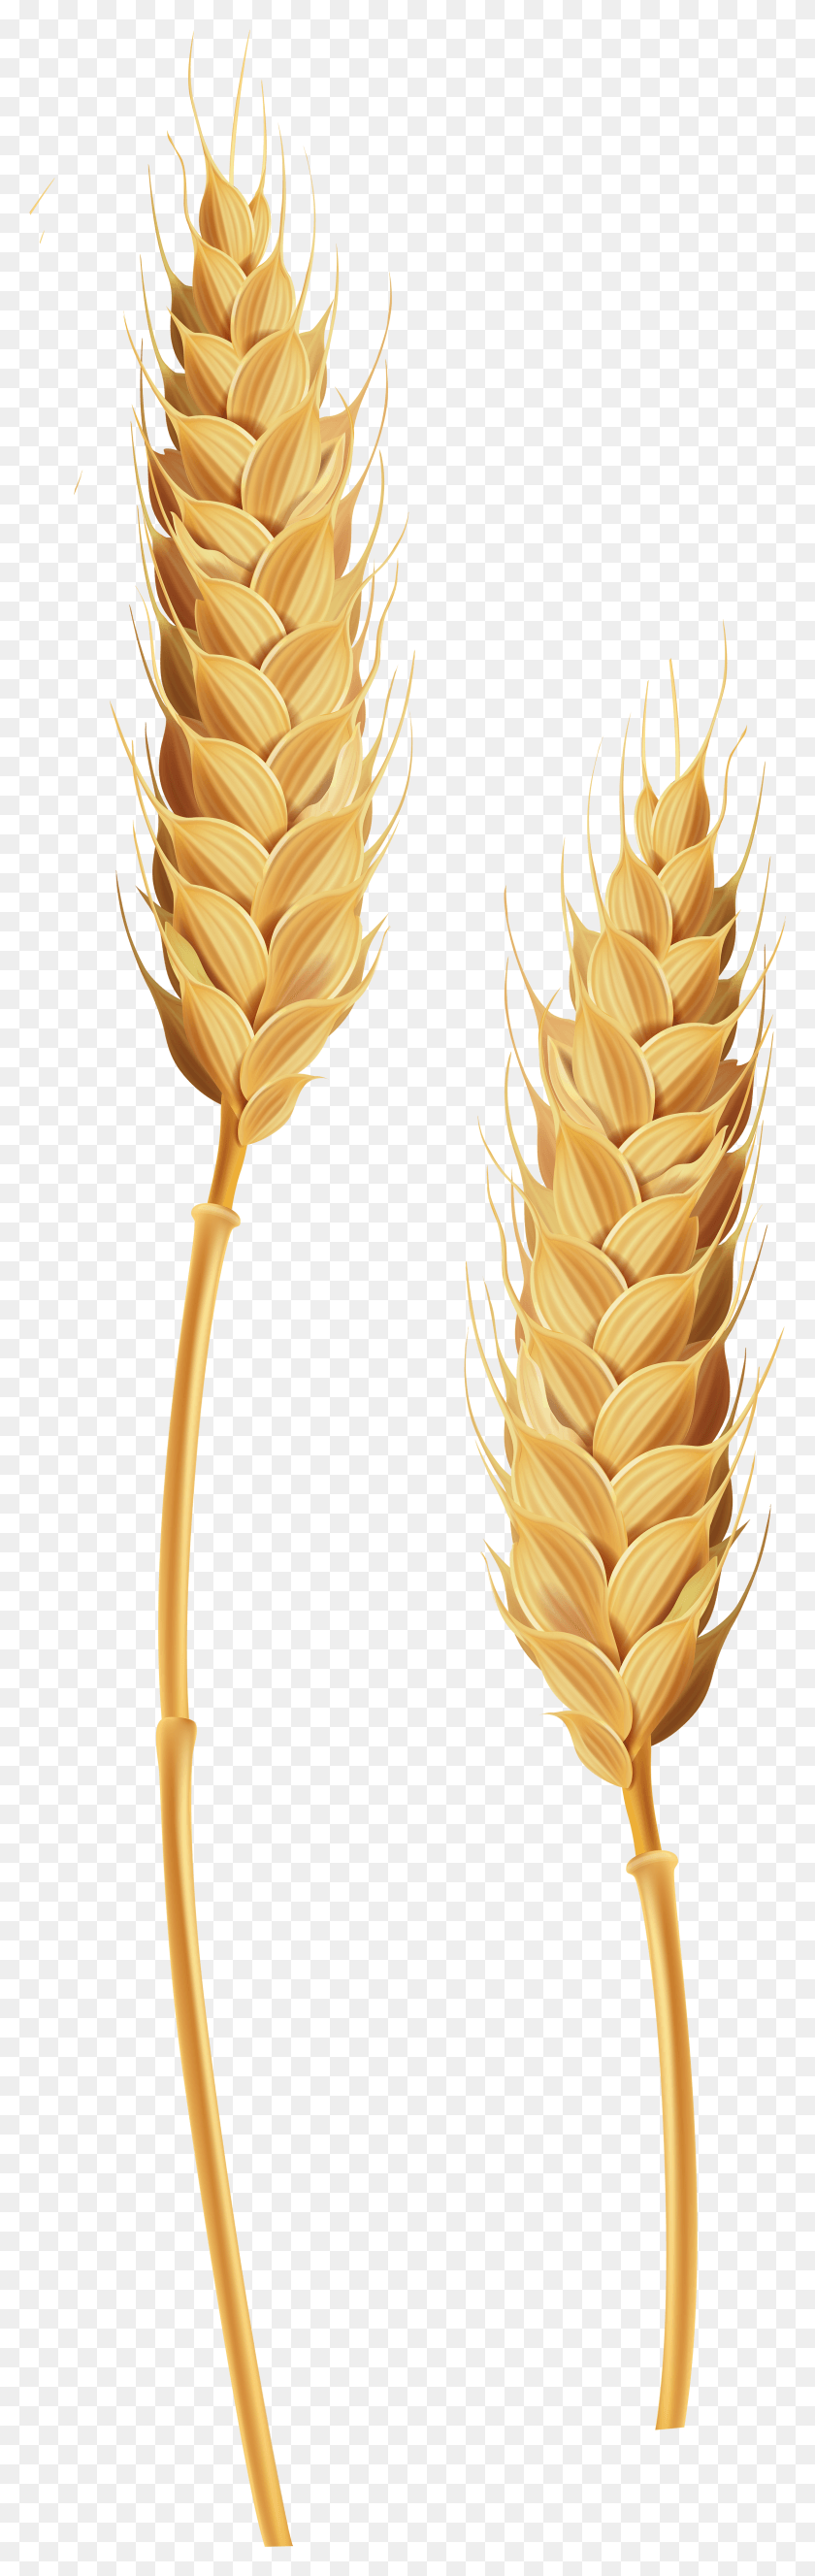 2387x7943 Png Ячмень Пшеничная Трава Стебель Зерна Png Скачать